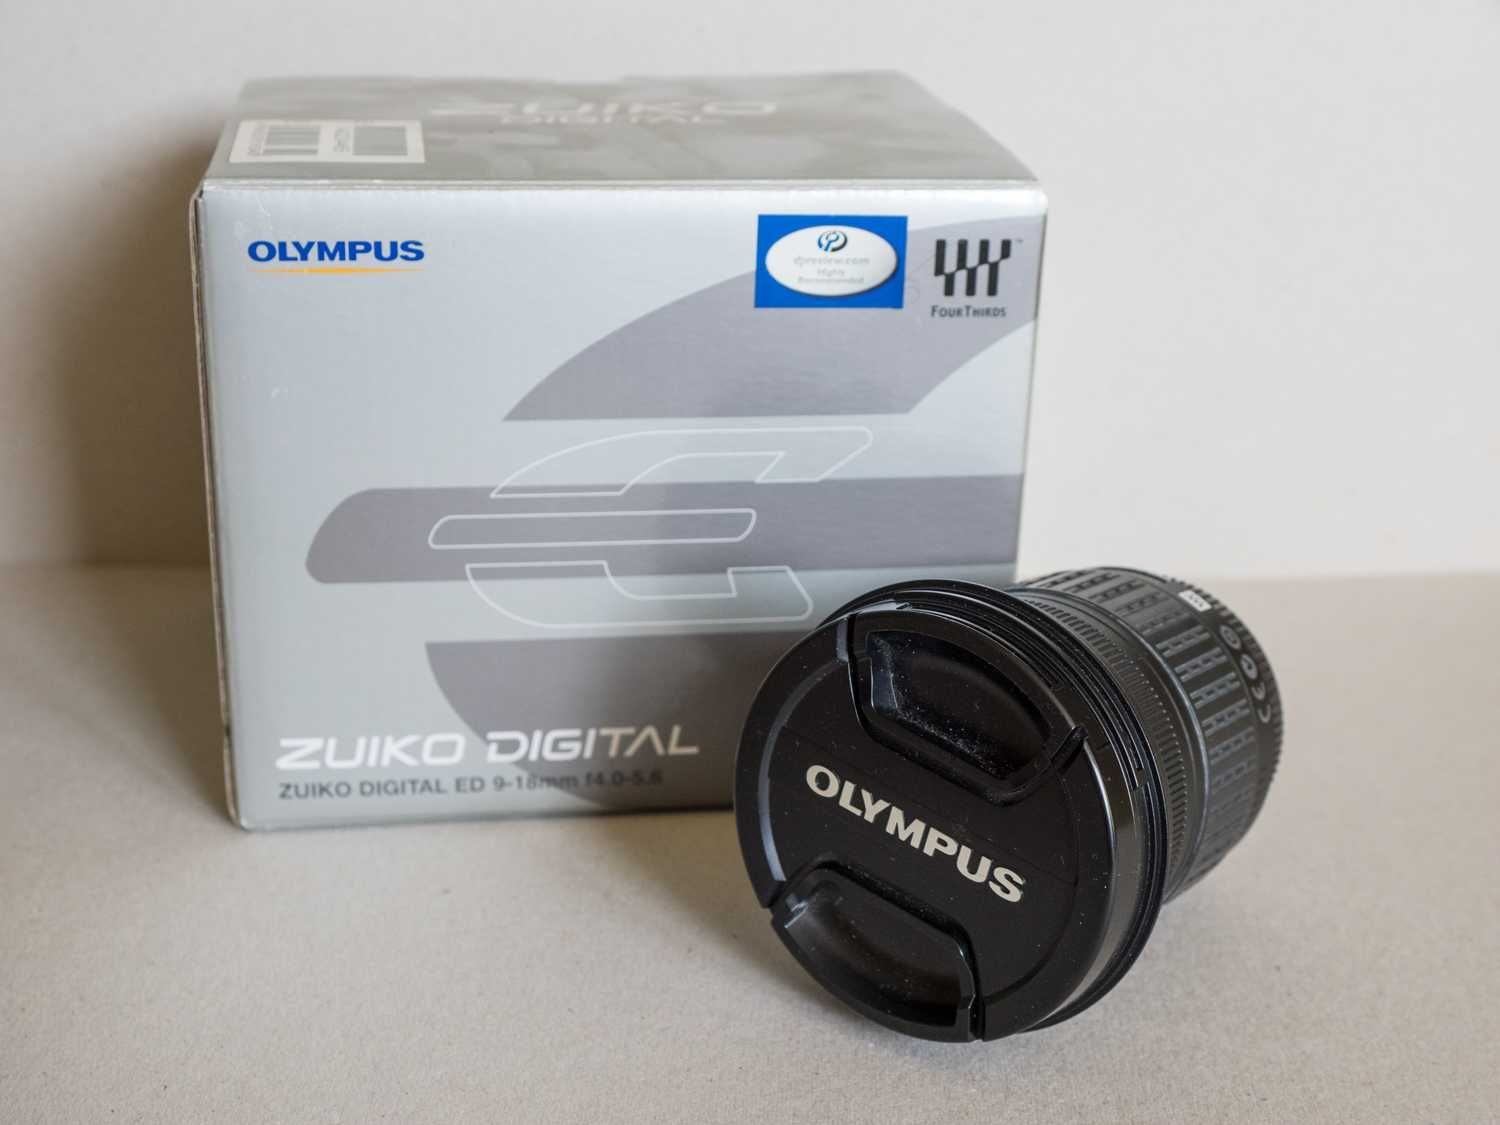 Obiektyw Zuiko Digital ED 9-18mm f4.0-5.6, system 4/3.